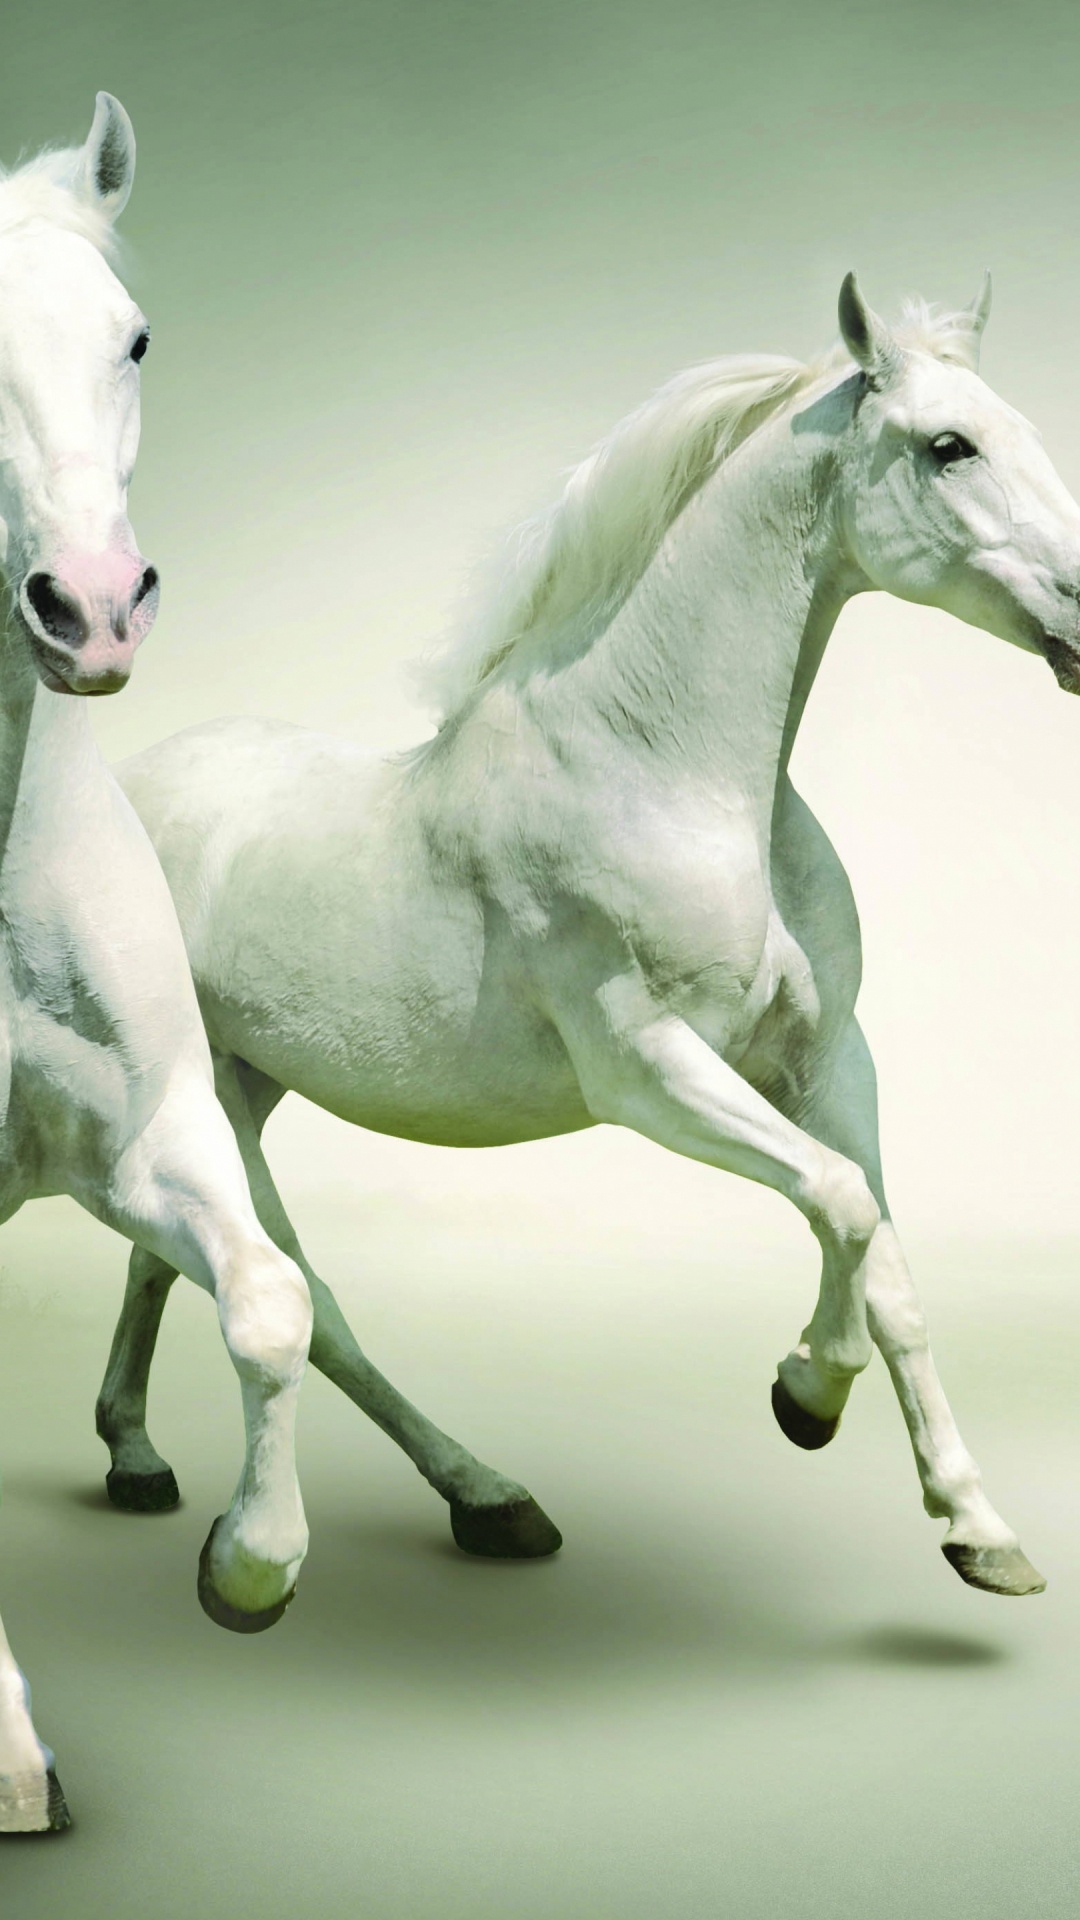 Weißes Pferd Mit Schwarz-weiß Gepunktetem Hemd. Wallpaper in 1080x1920 Resolution